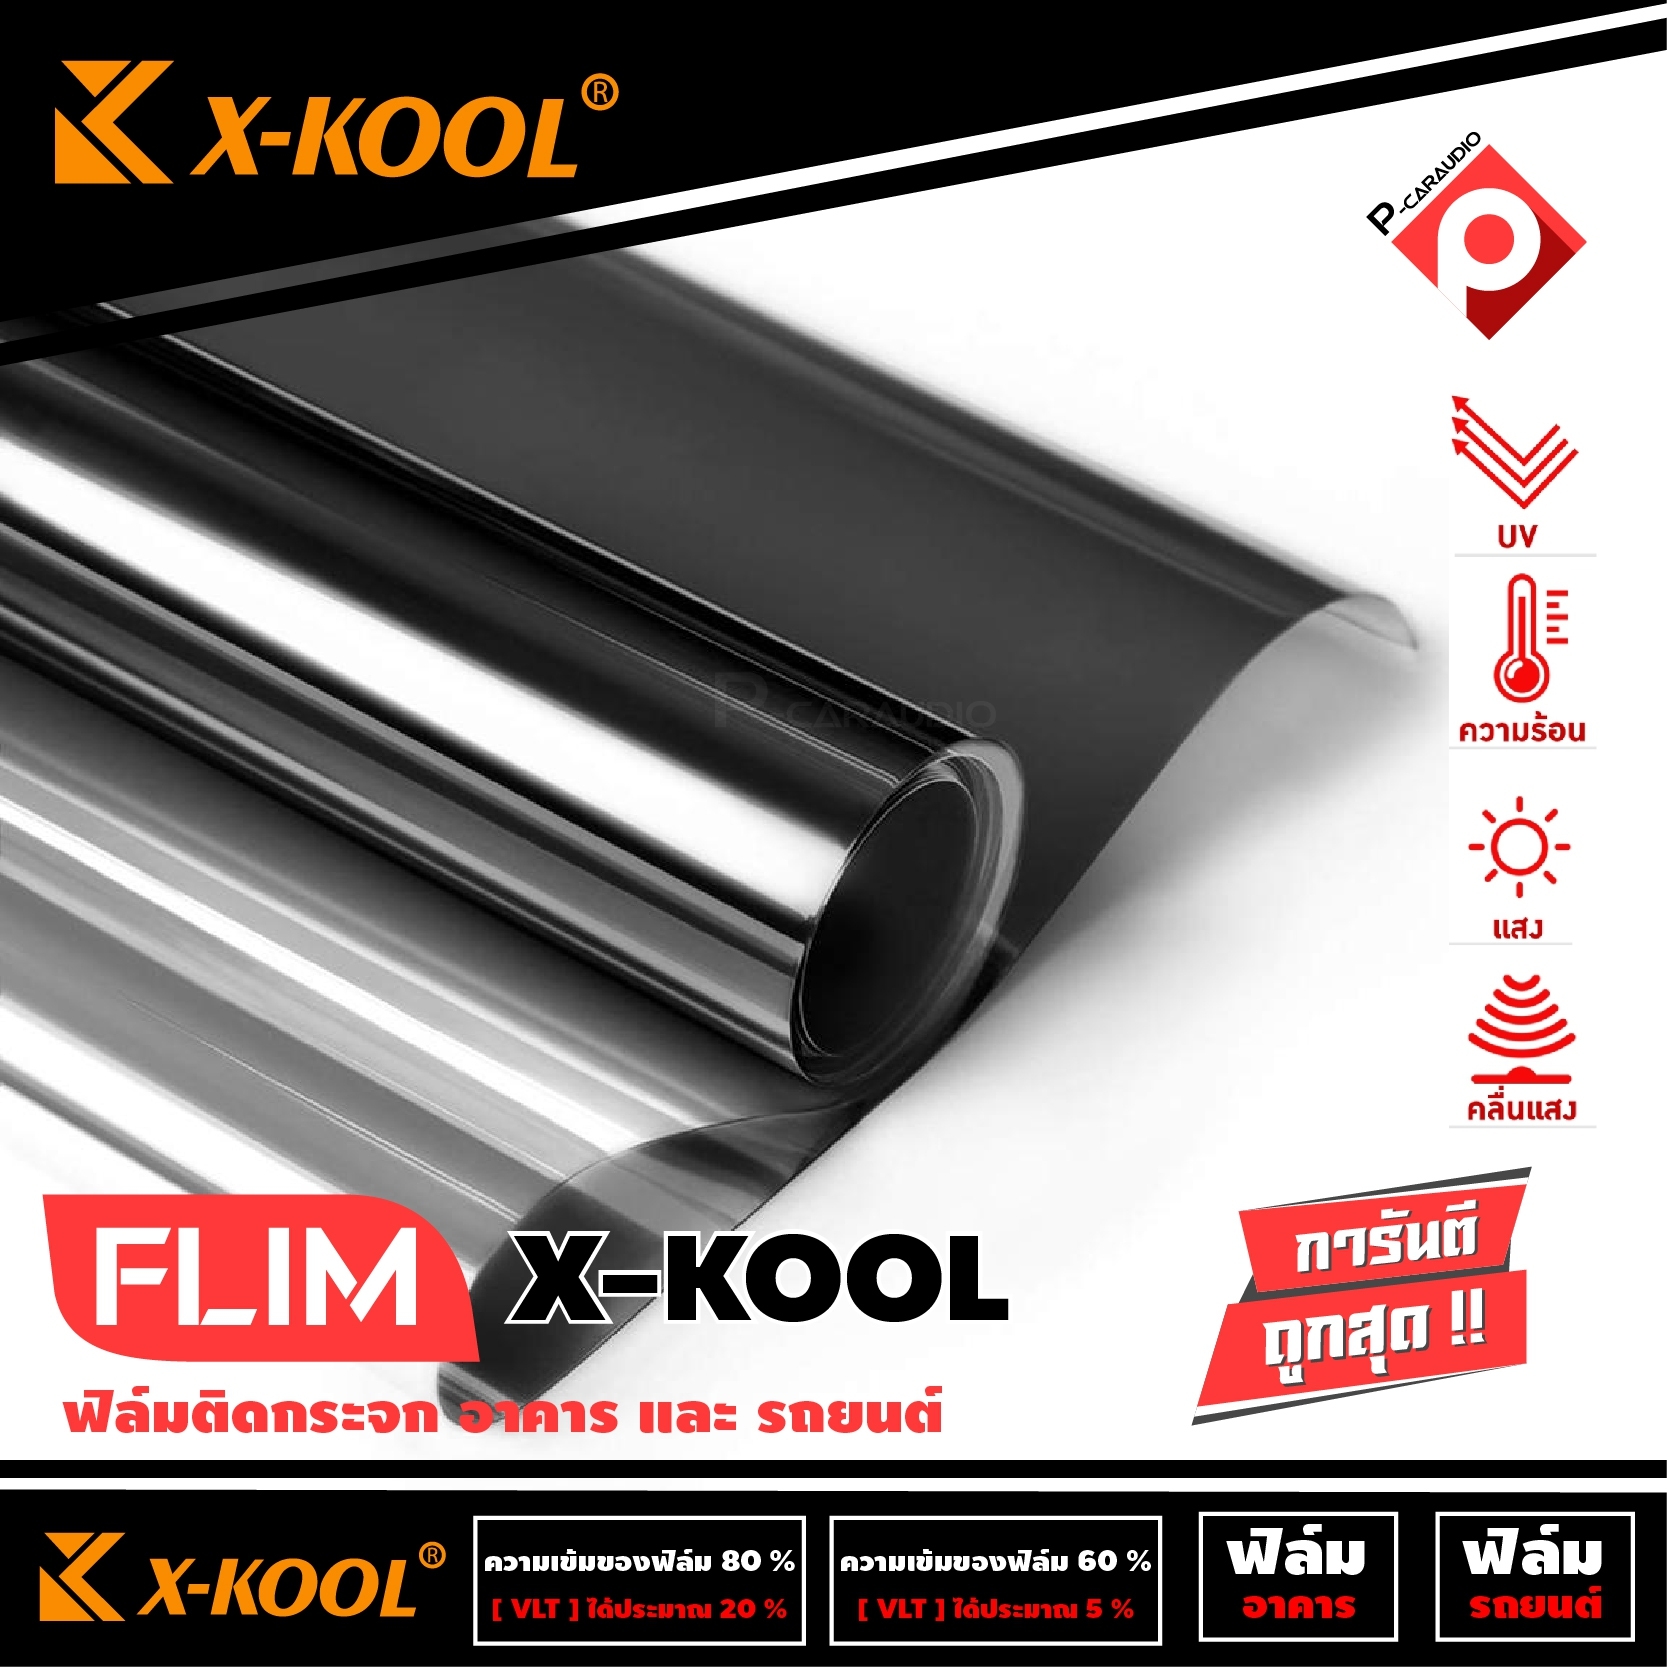 X-KOOL FLIM ฟิล์มกรองแสงยกม้วน ราคา 2460 บาท ฟิล์มติดรถยนต์ ฟิล์มติดอาคาร คอนโด หน้าต่าง ประตู กรองแสง60%และ80% ขนาด500ตารางฟุตกว้าง 152 ซม. X 30 เมตร